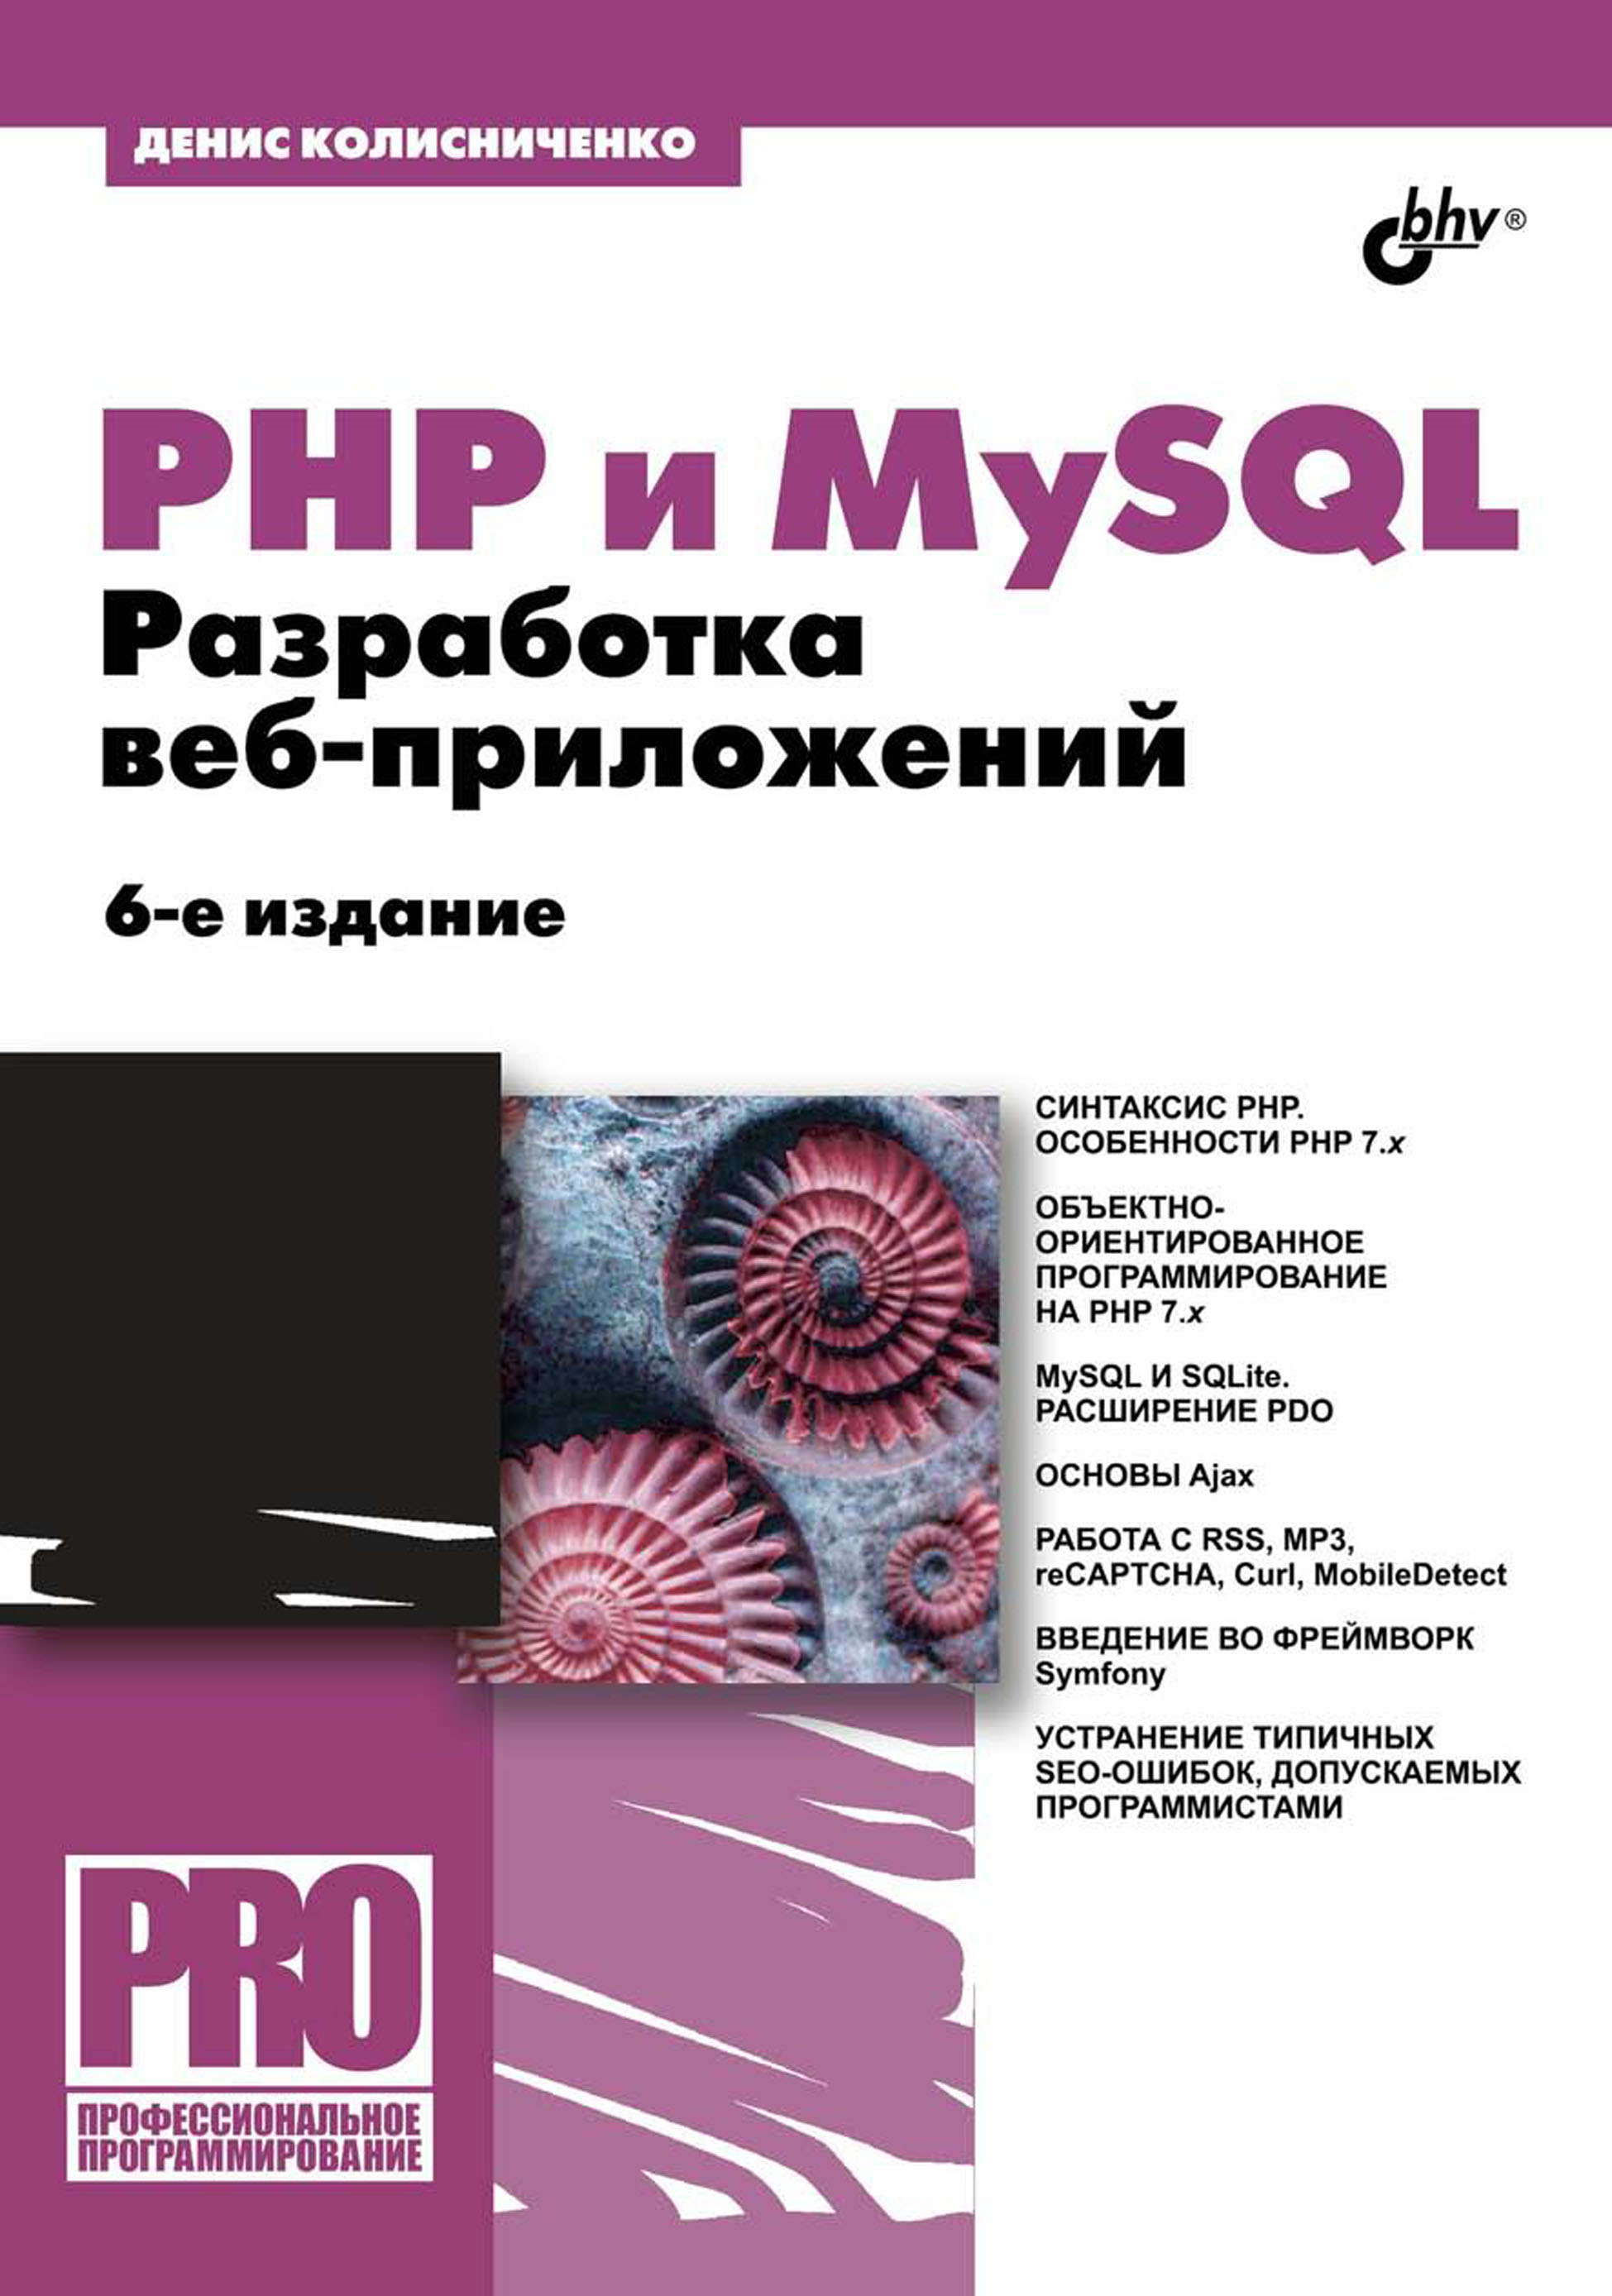 Книга Профессиональное программирование PHP и MySQL. Разработка веб-приложений созданная Денис Колисниченко может относится к жанру интернет, программирование, руководства. Стоимость электронной книги PHP и MySQL. Разработка веб-приложений с идентификатором 19222711 составляет 472.00 руб.